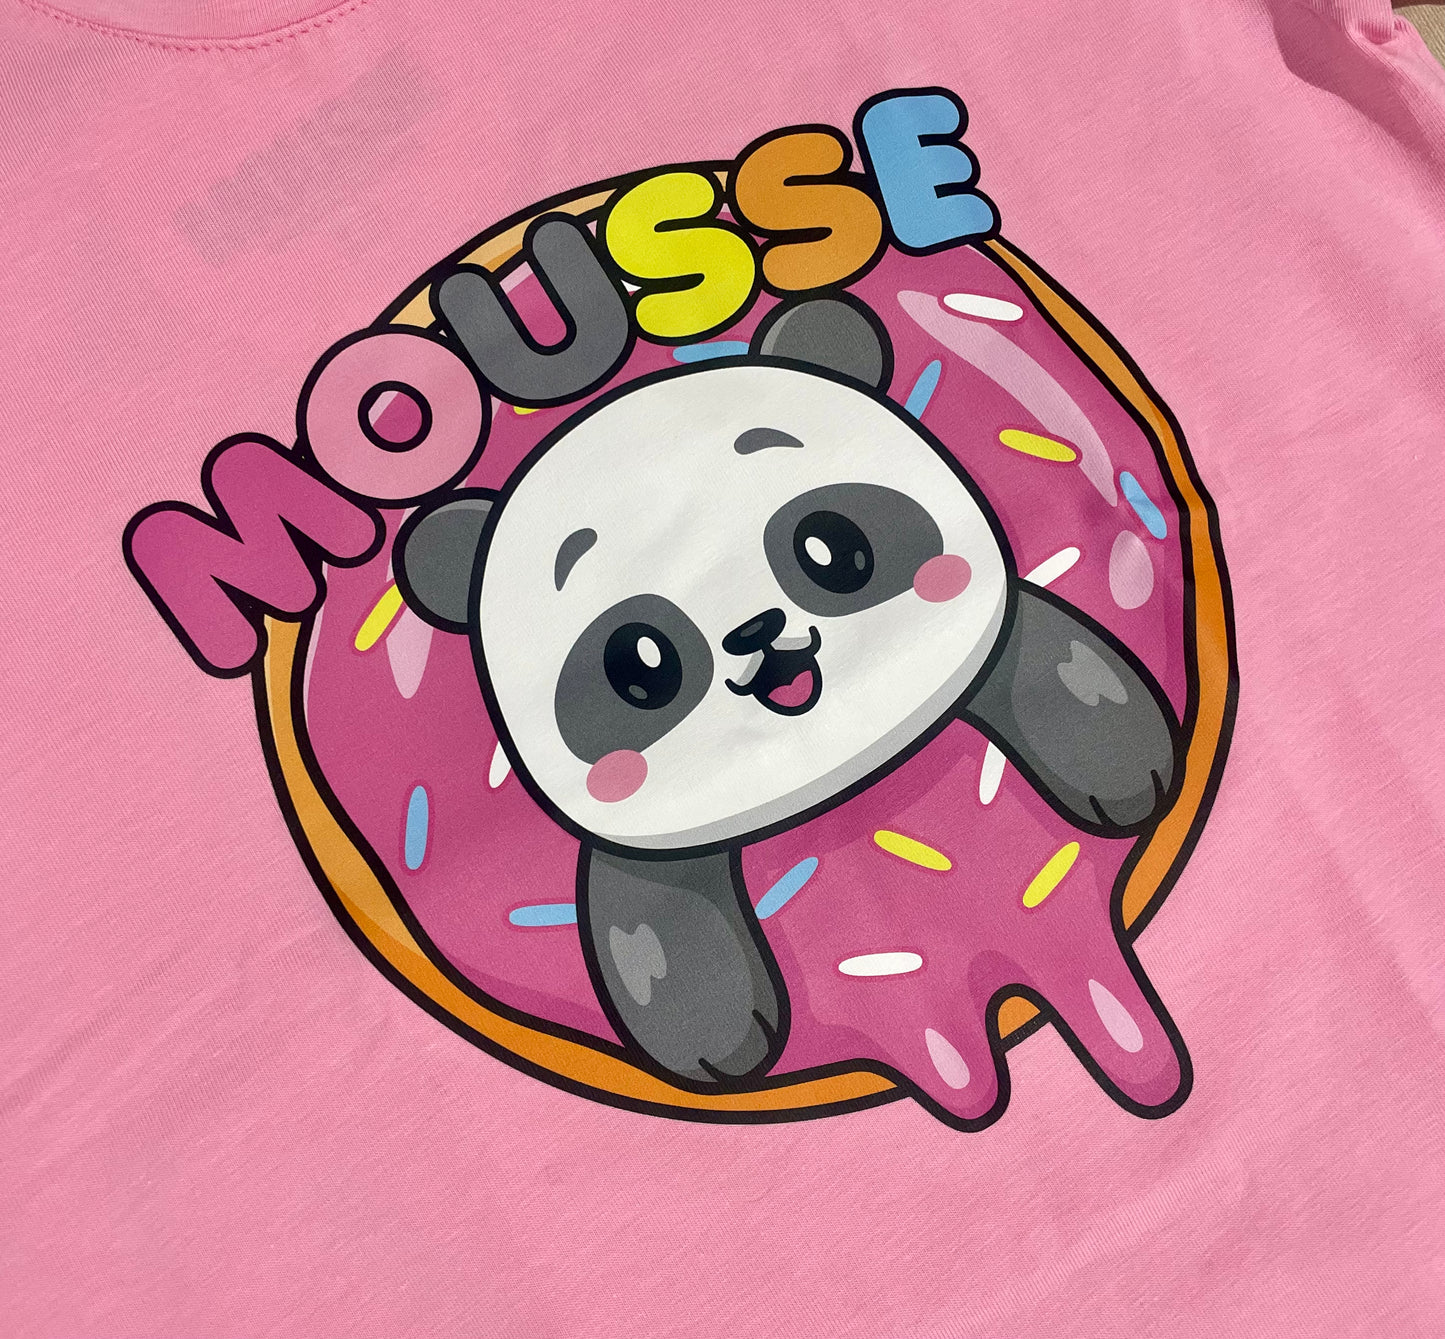 T-shirt panda pink Mousse